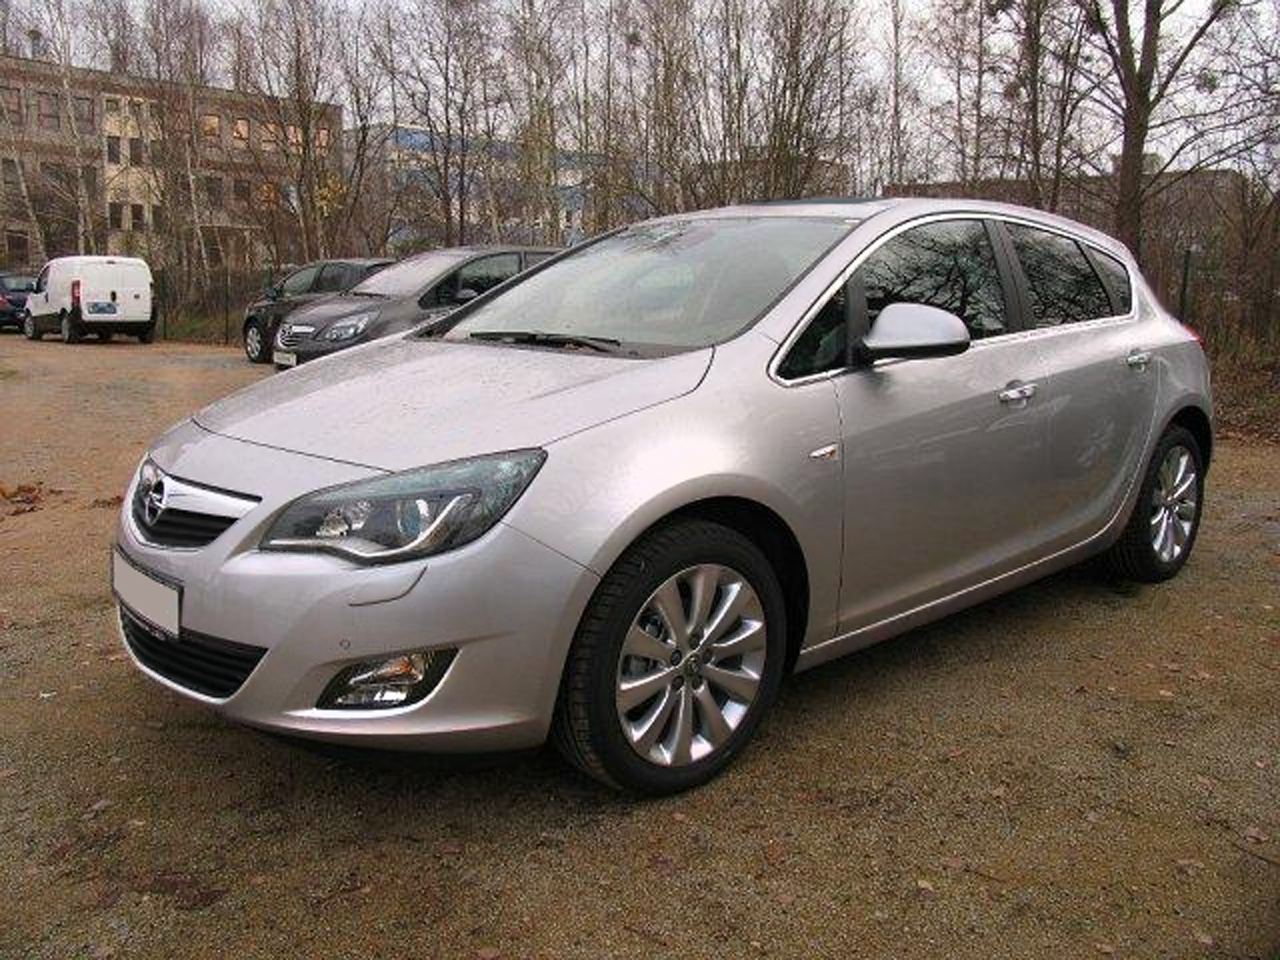 File:Opel Astra J rear 20100808.jpg - Wikimedia Commons